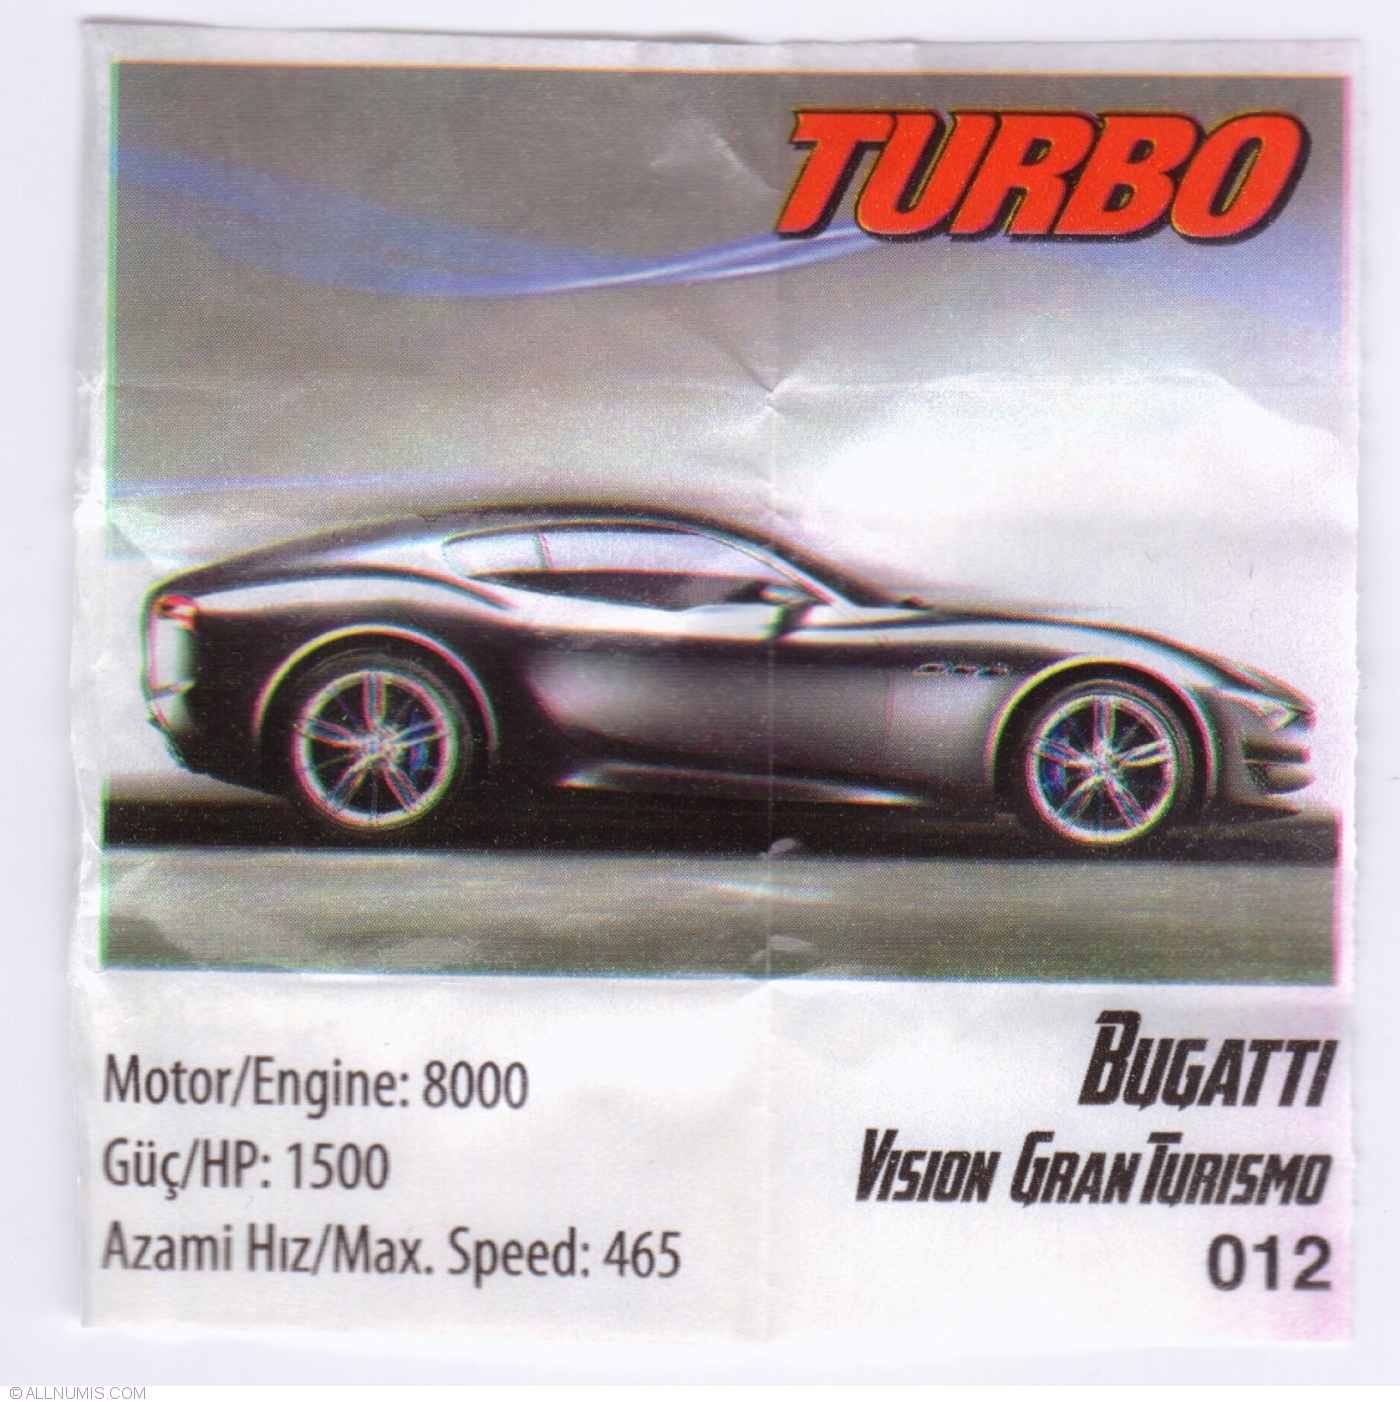 012 - Bugatti Vision Gran Turismo, TURBO XTREME 1-160 (2017) - Turbo -  Chewing Gum Insert - 40257